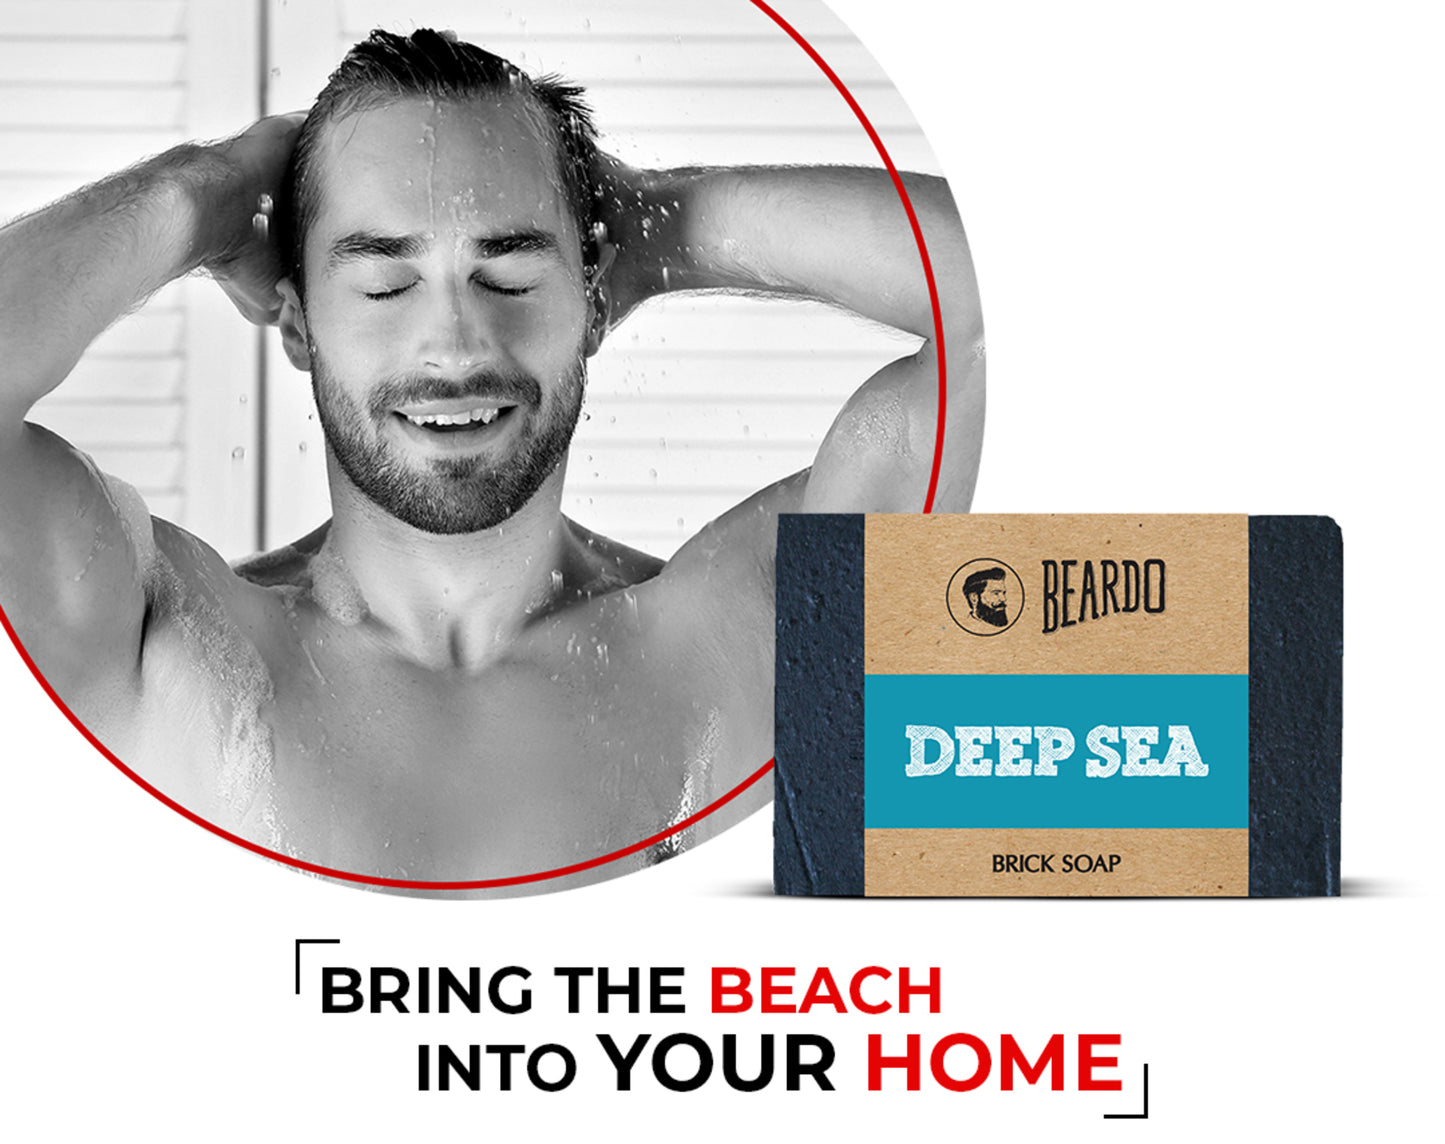 Beardo Deep Sea Brick Soap (125g)